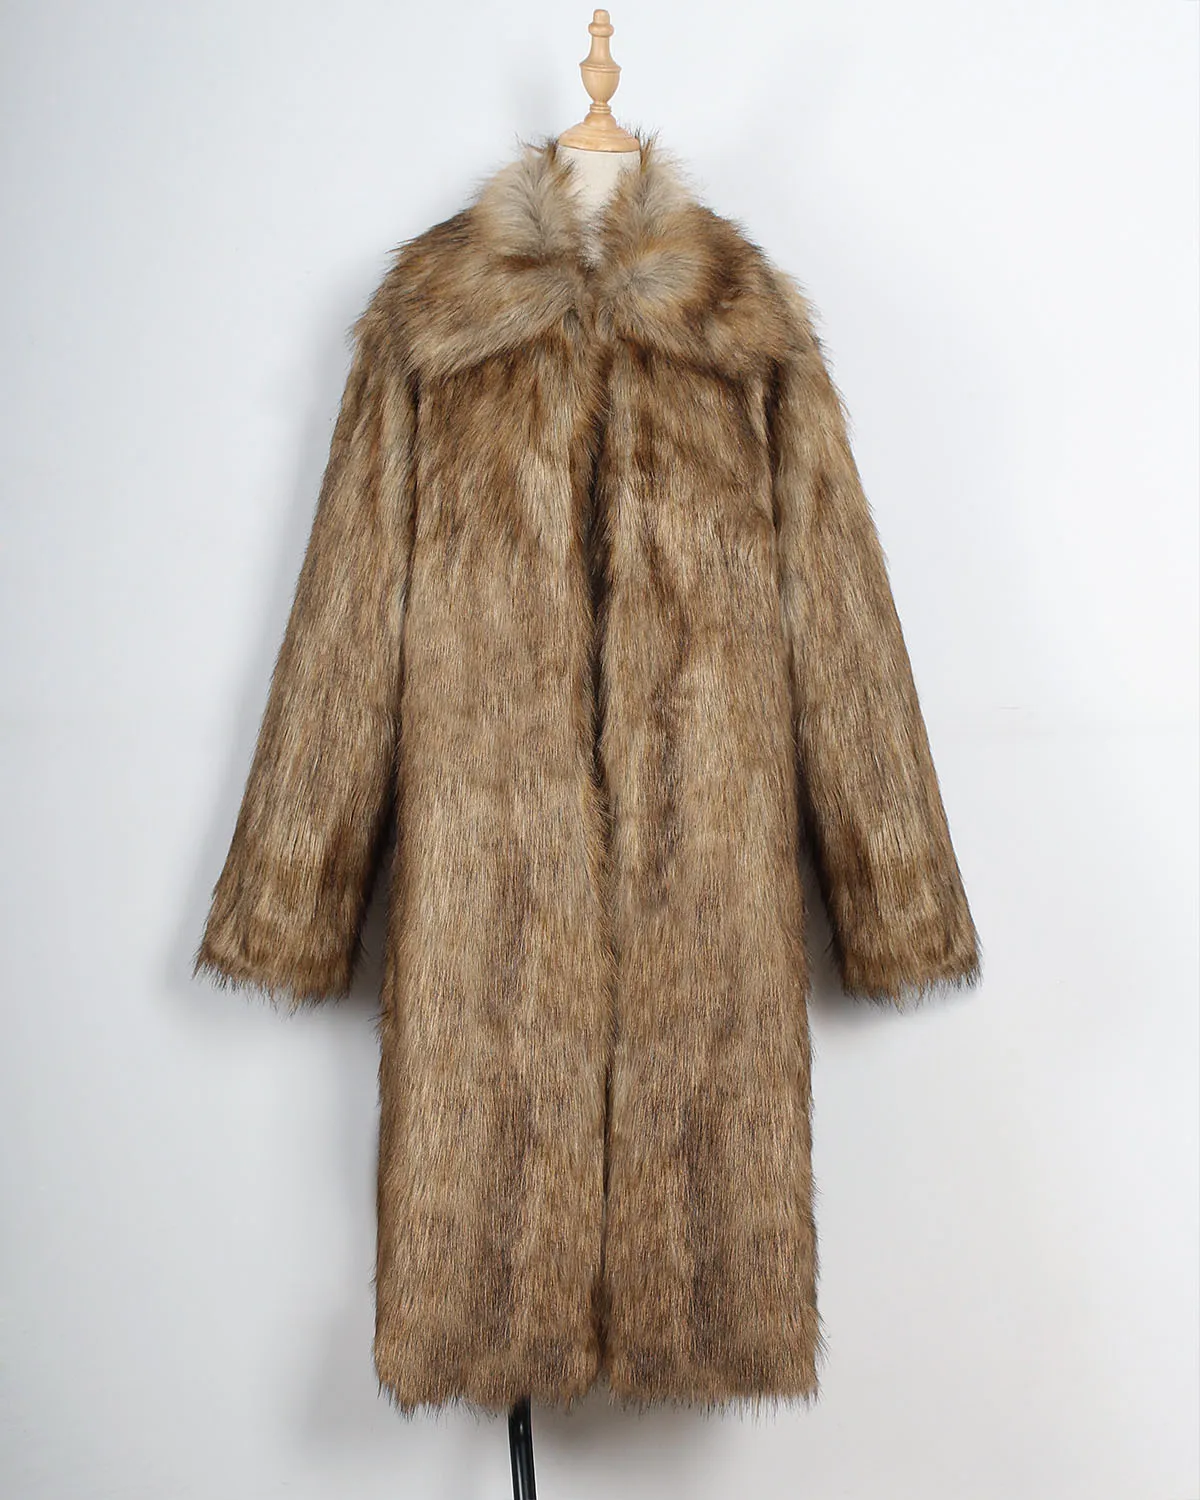 Fashion Square Collar Long Fur-like Women's Coat Women's Autumn and Winter New Long Coat Coat Women